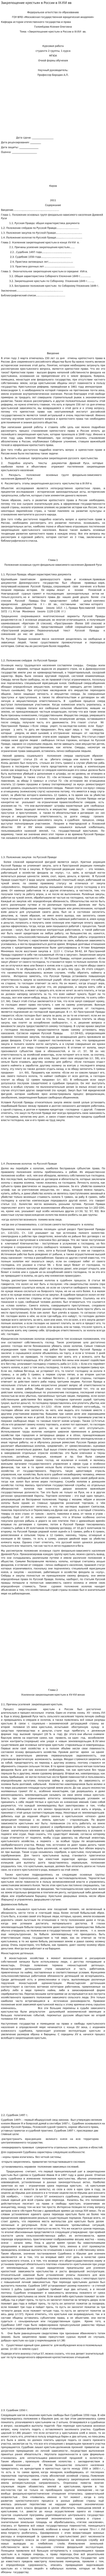 Закрепощение крестьян в России в IX-XVI вв